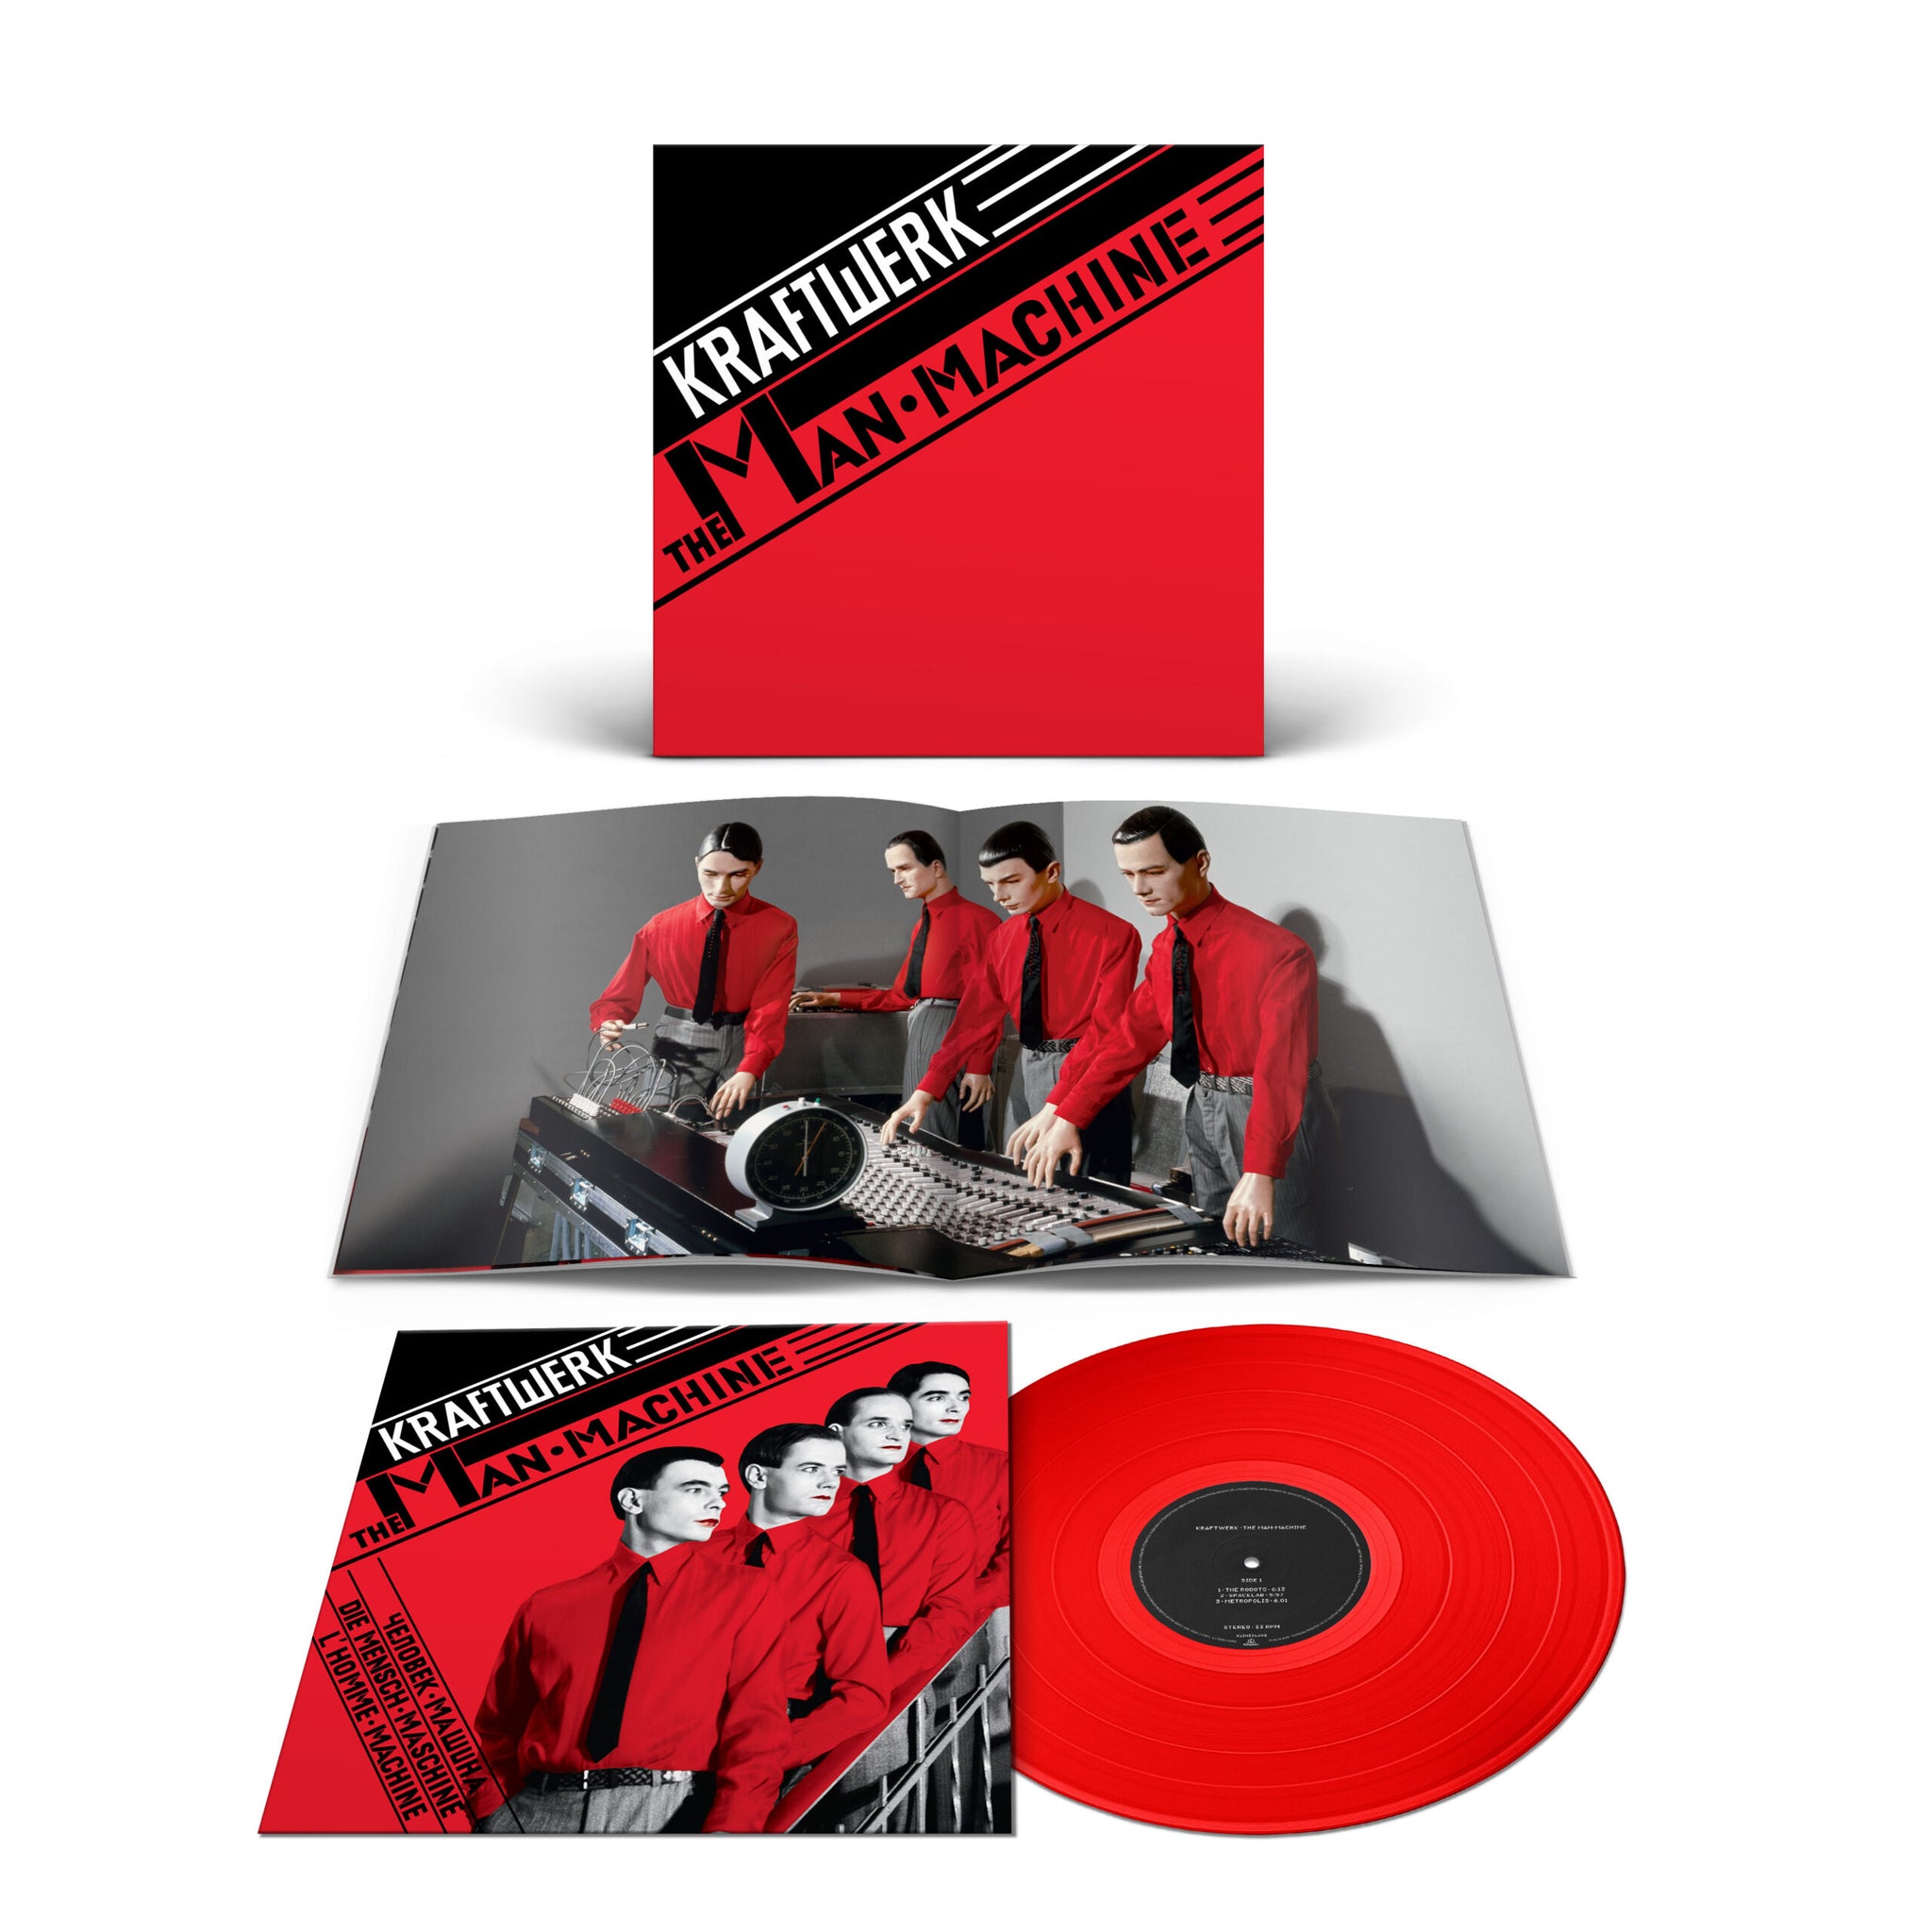 KRAFTWERK – The Man Machine – LP – Limited Translucent Red Vinyl